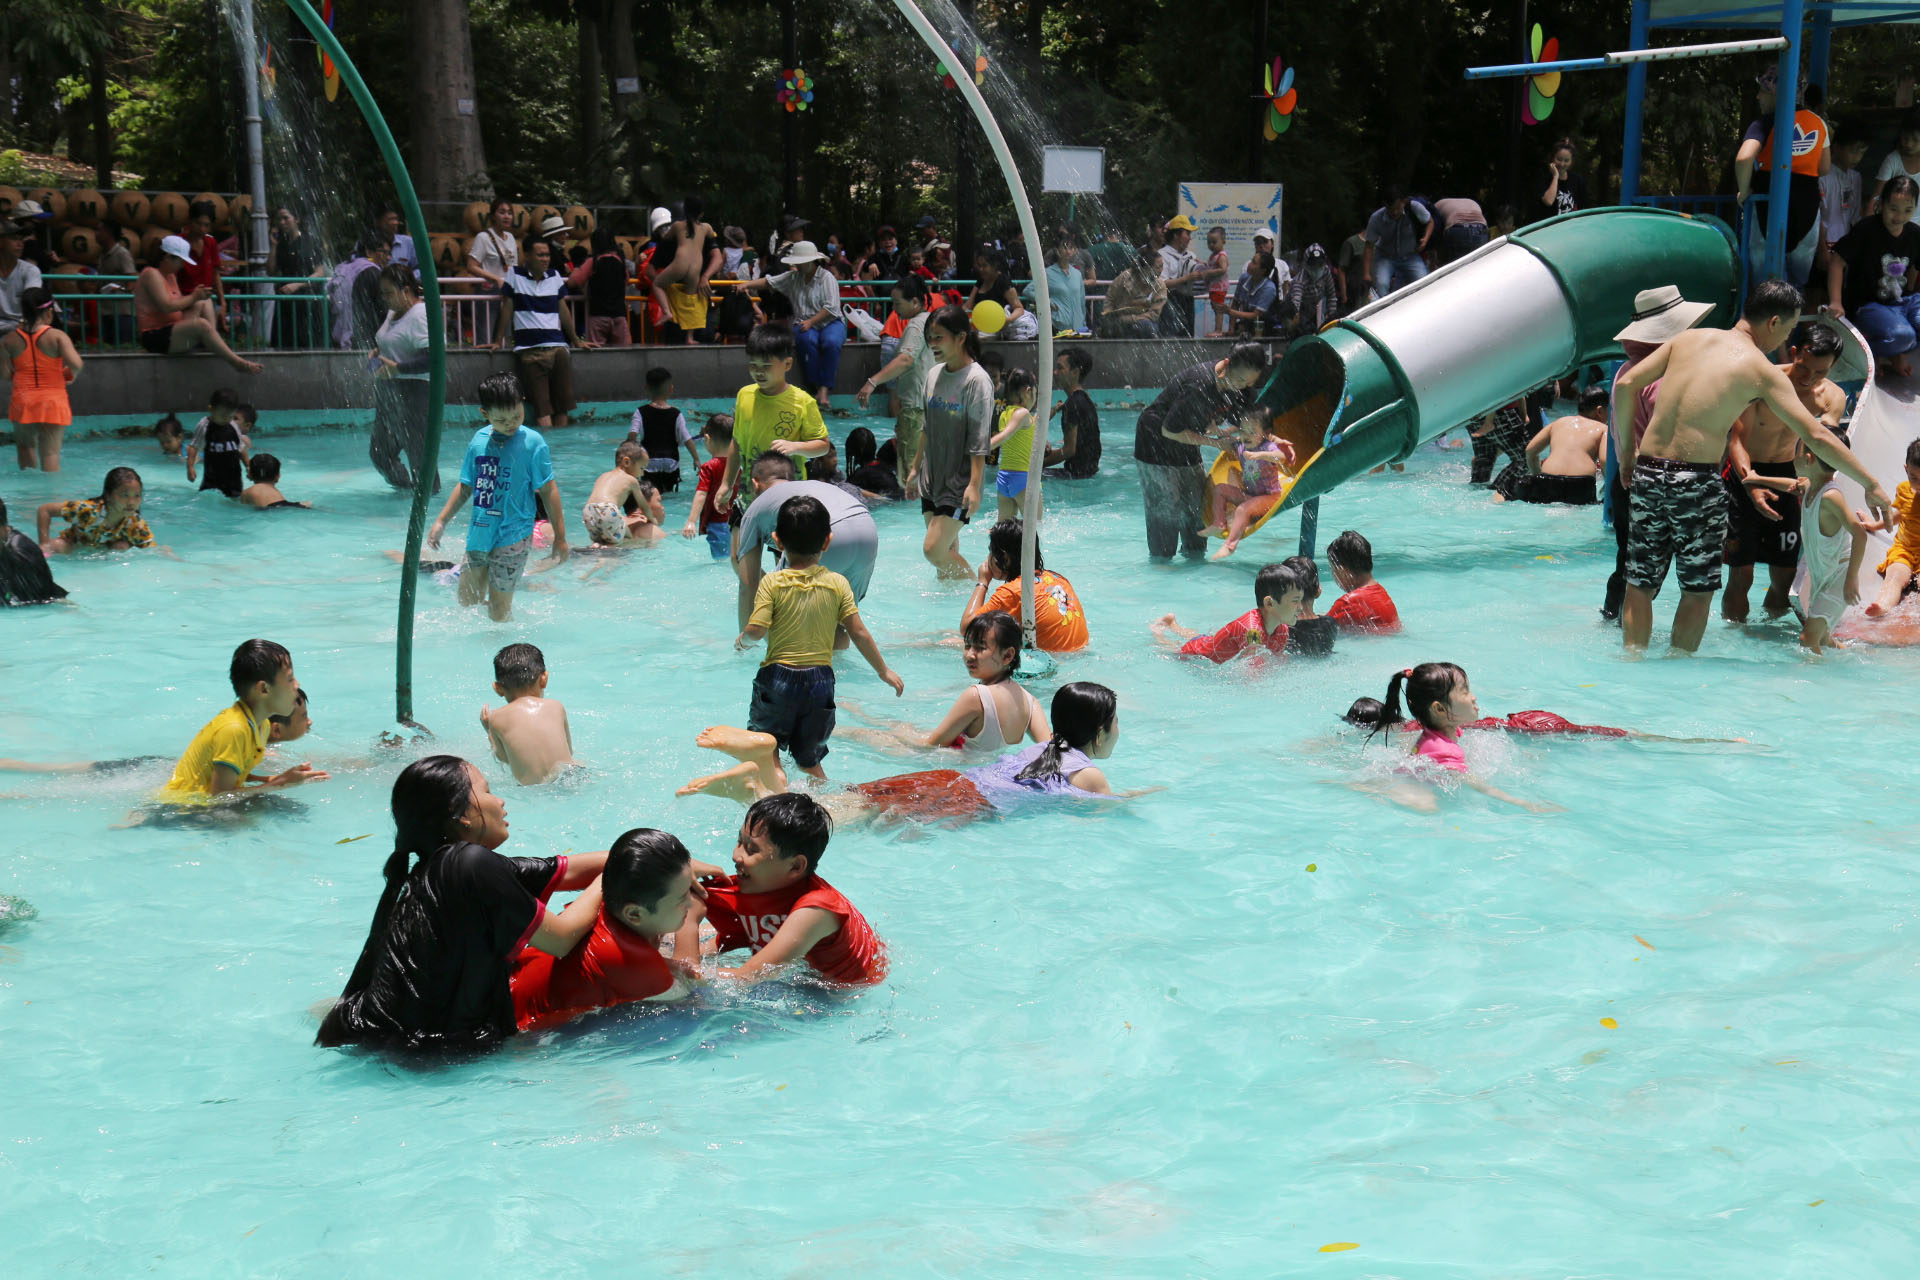 Khu vực bể bơi luôn trong tình trạng đông đúc, cả người lớn, trẻ nhỏ đều hào hứng vui chơi ở khu vực này dưới nắng trưa gay gắt.